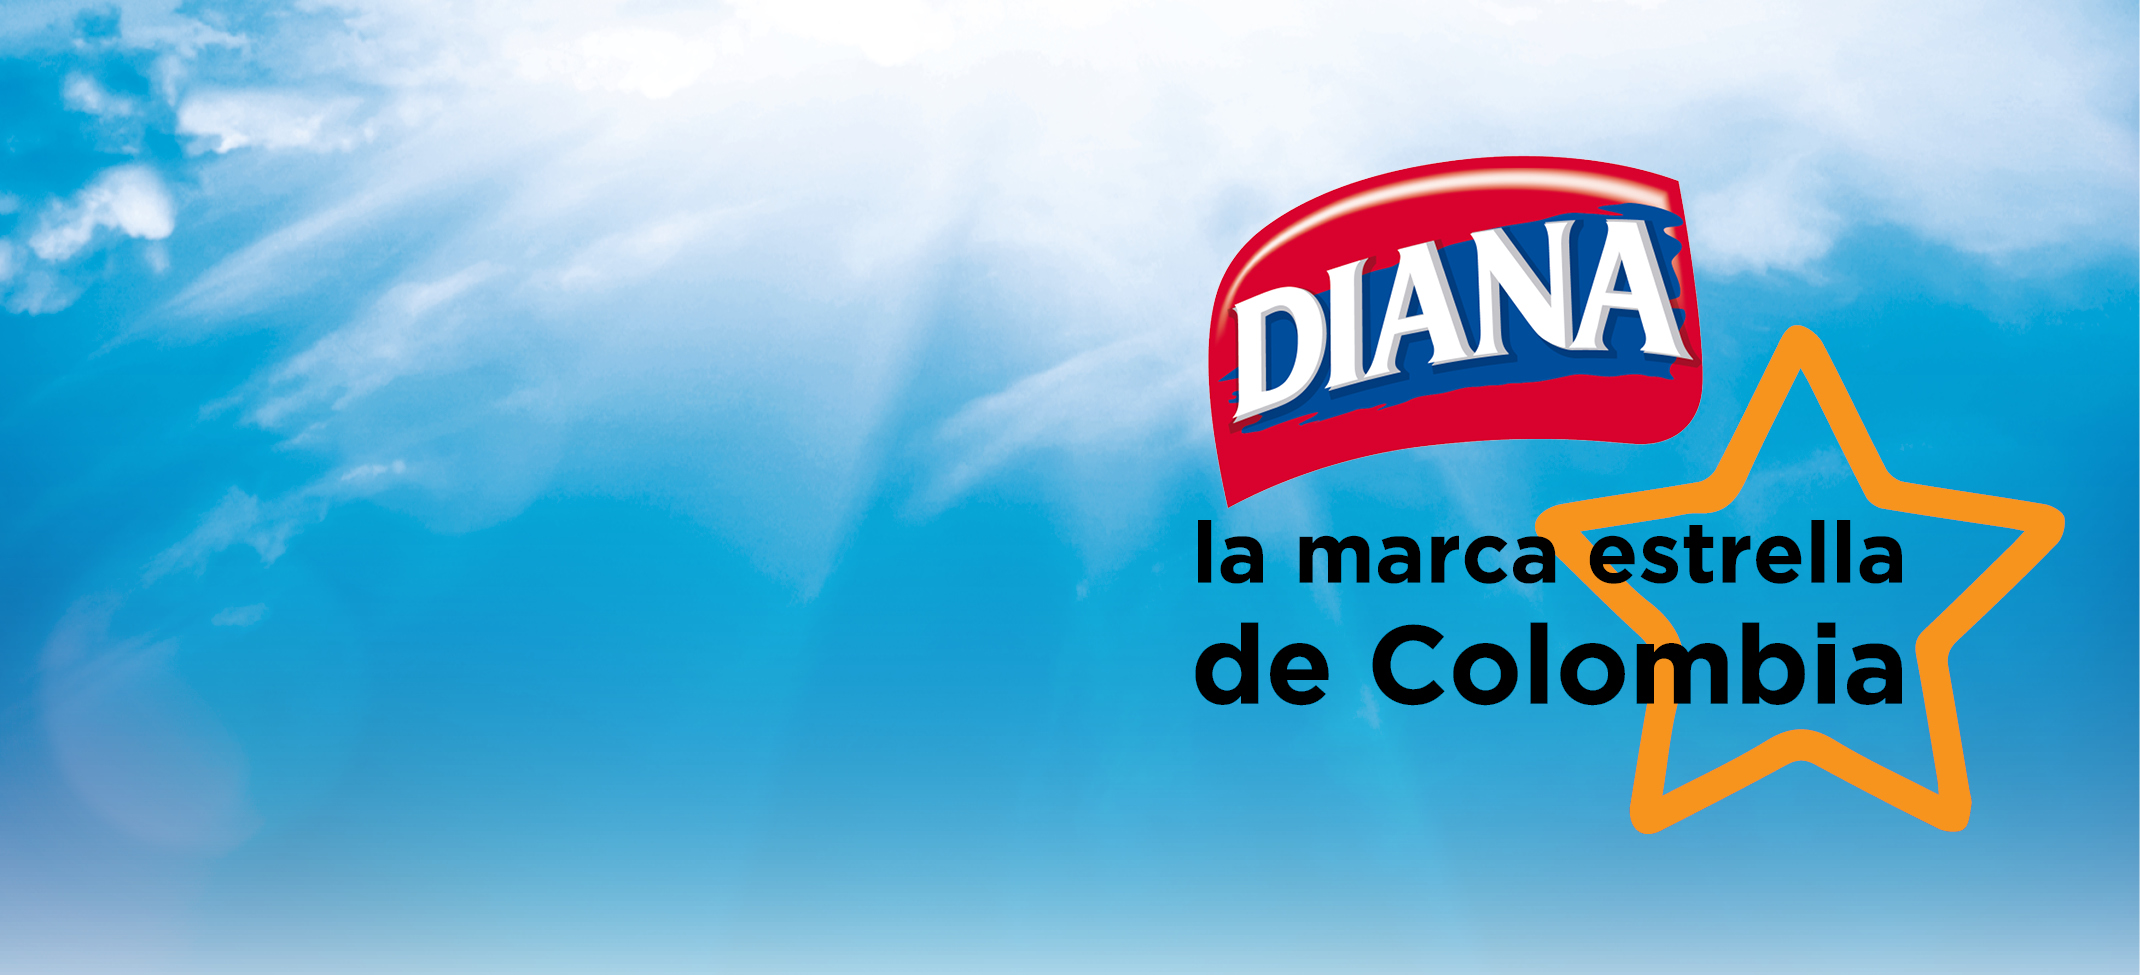 Diana la marca estrella de Colombia